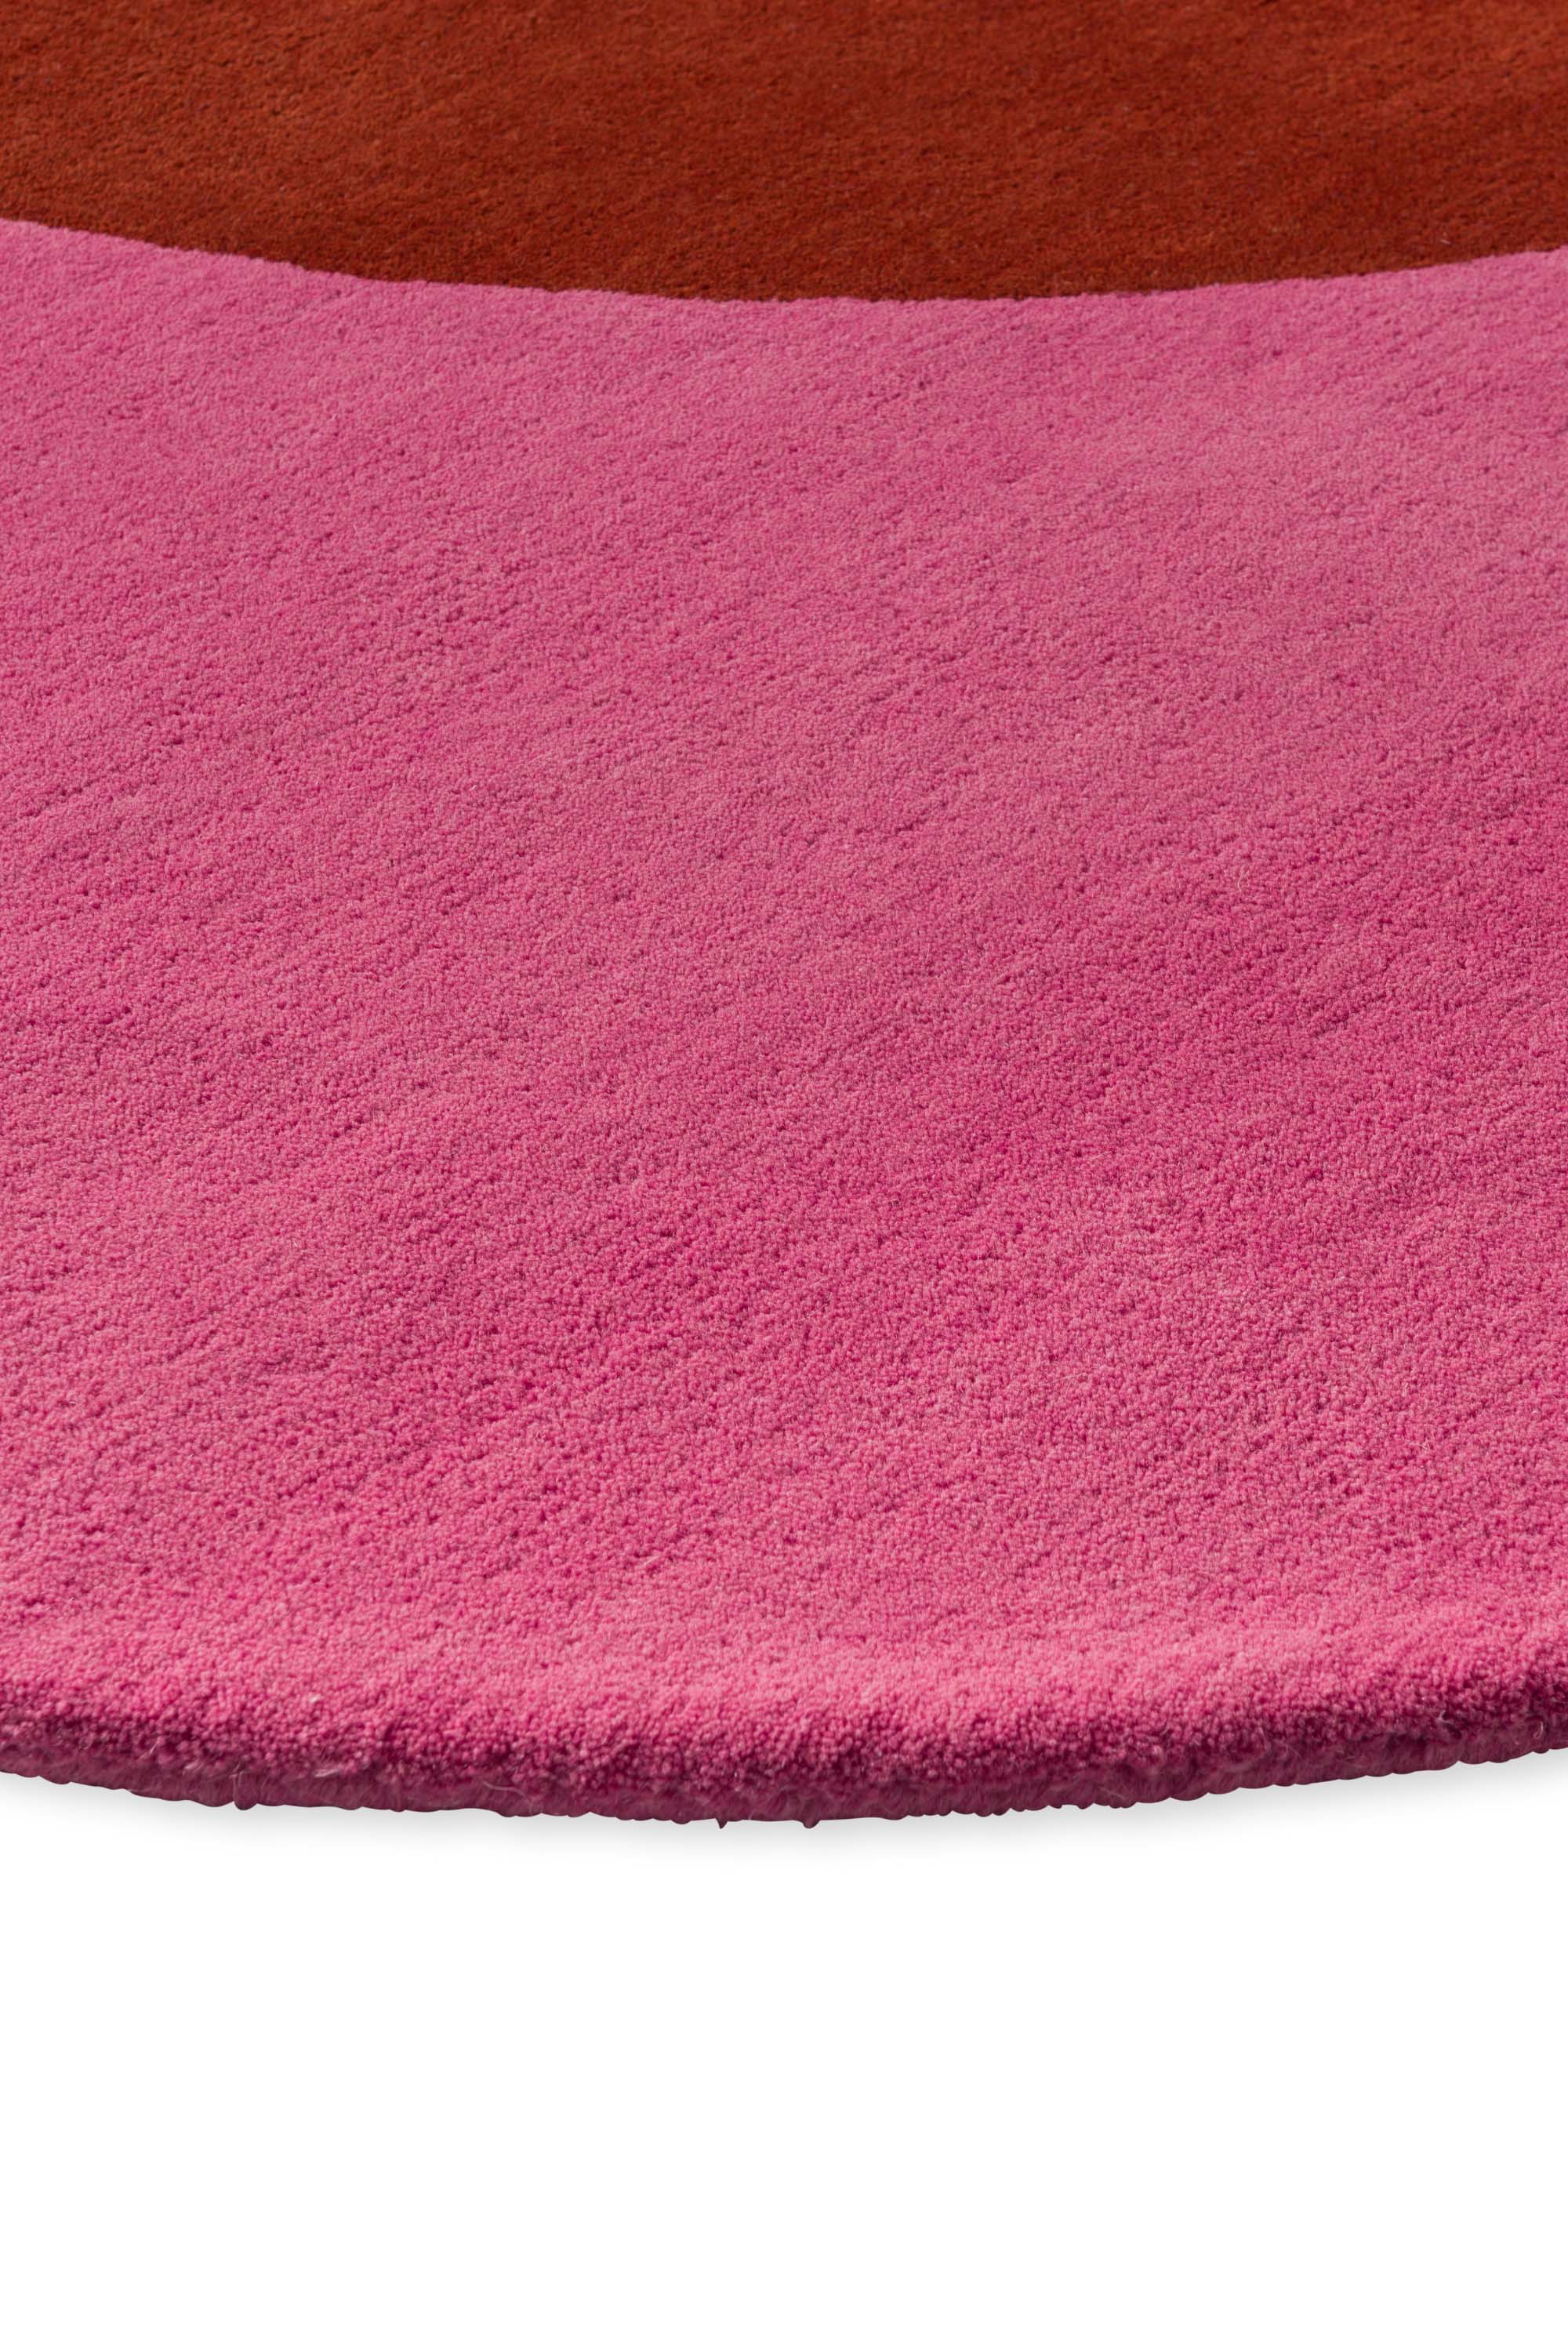 Pink flower shaped rug